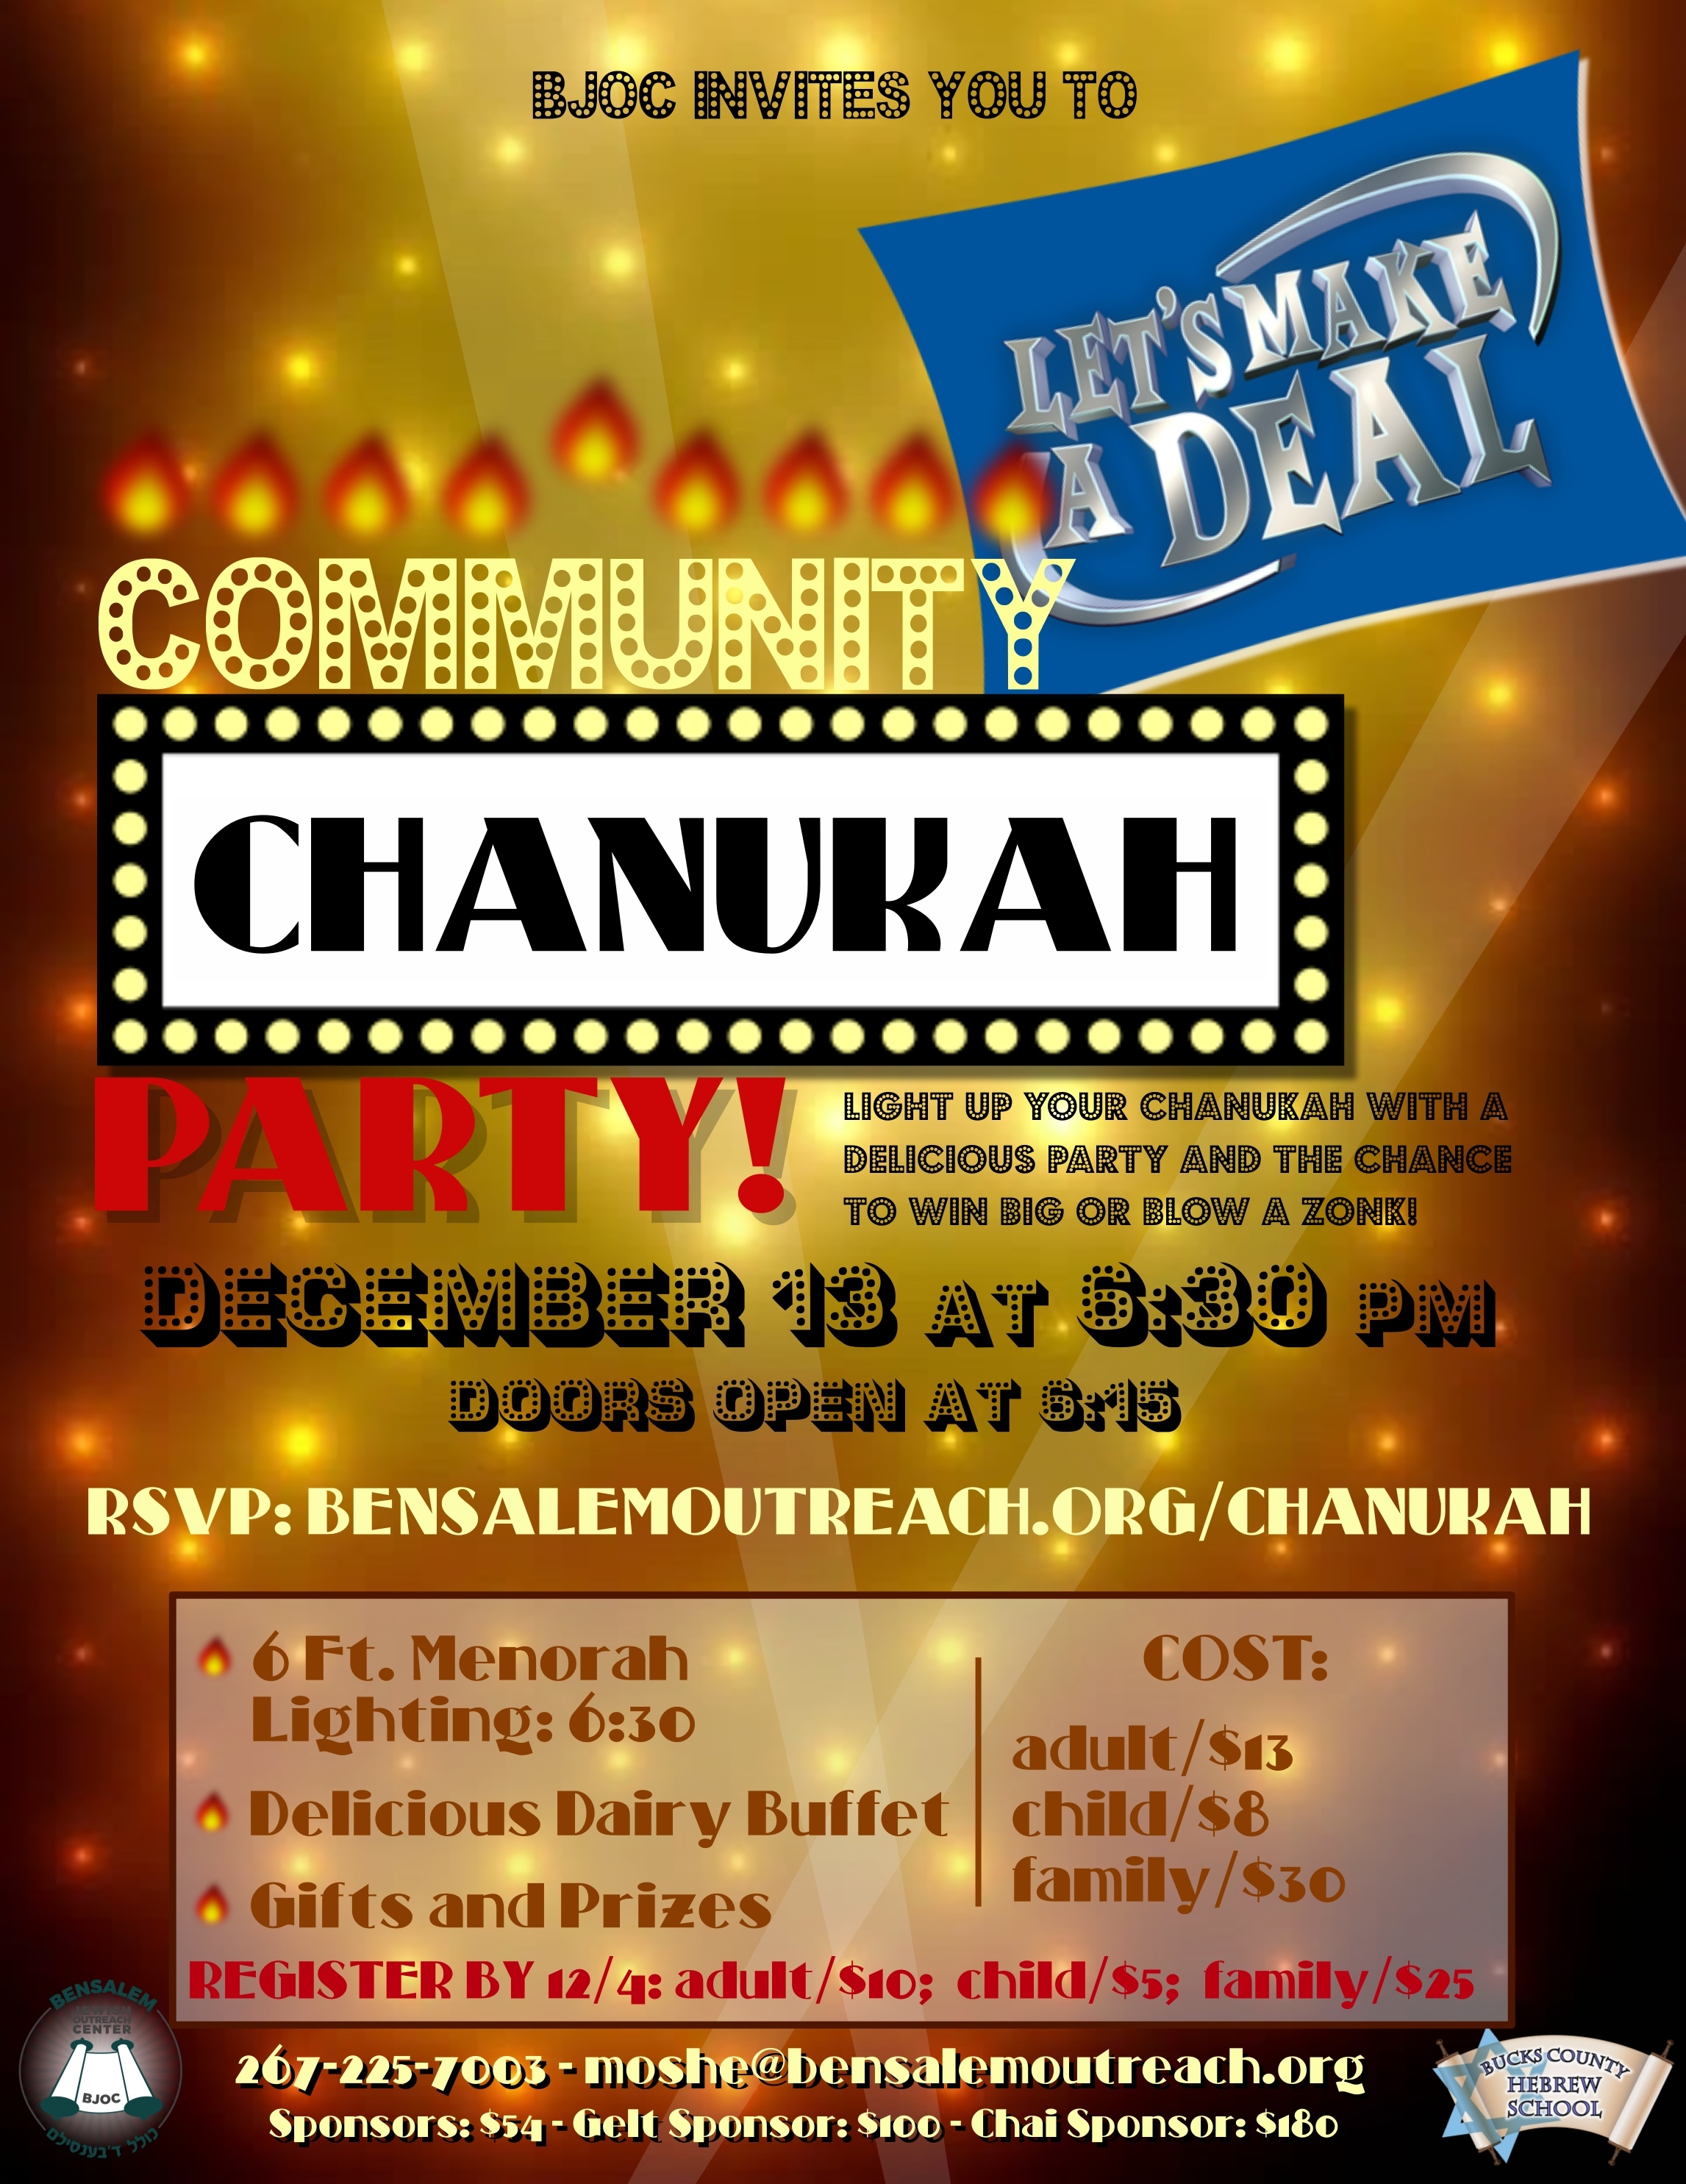 Let's Make a Deal Chanukah Party